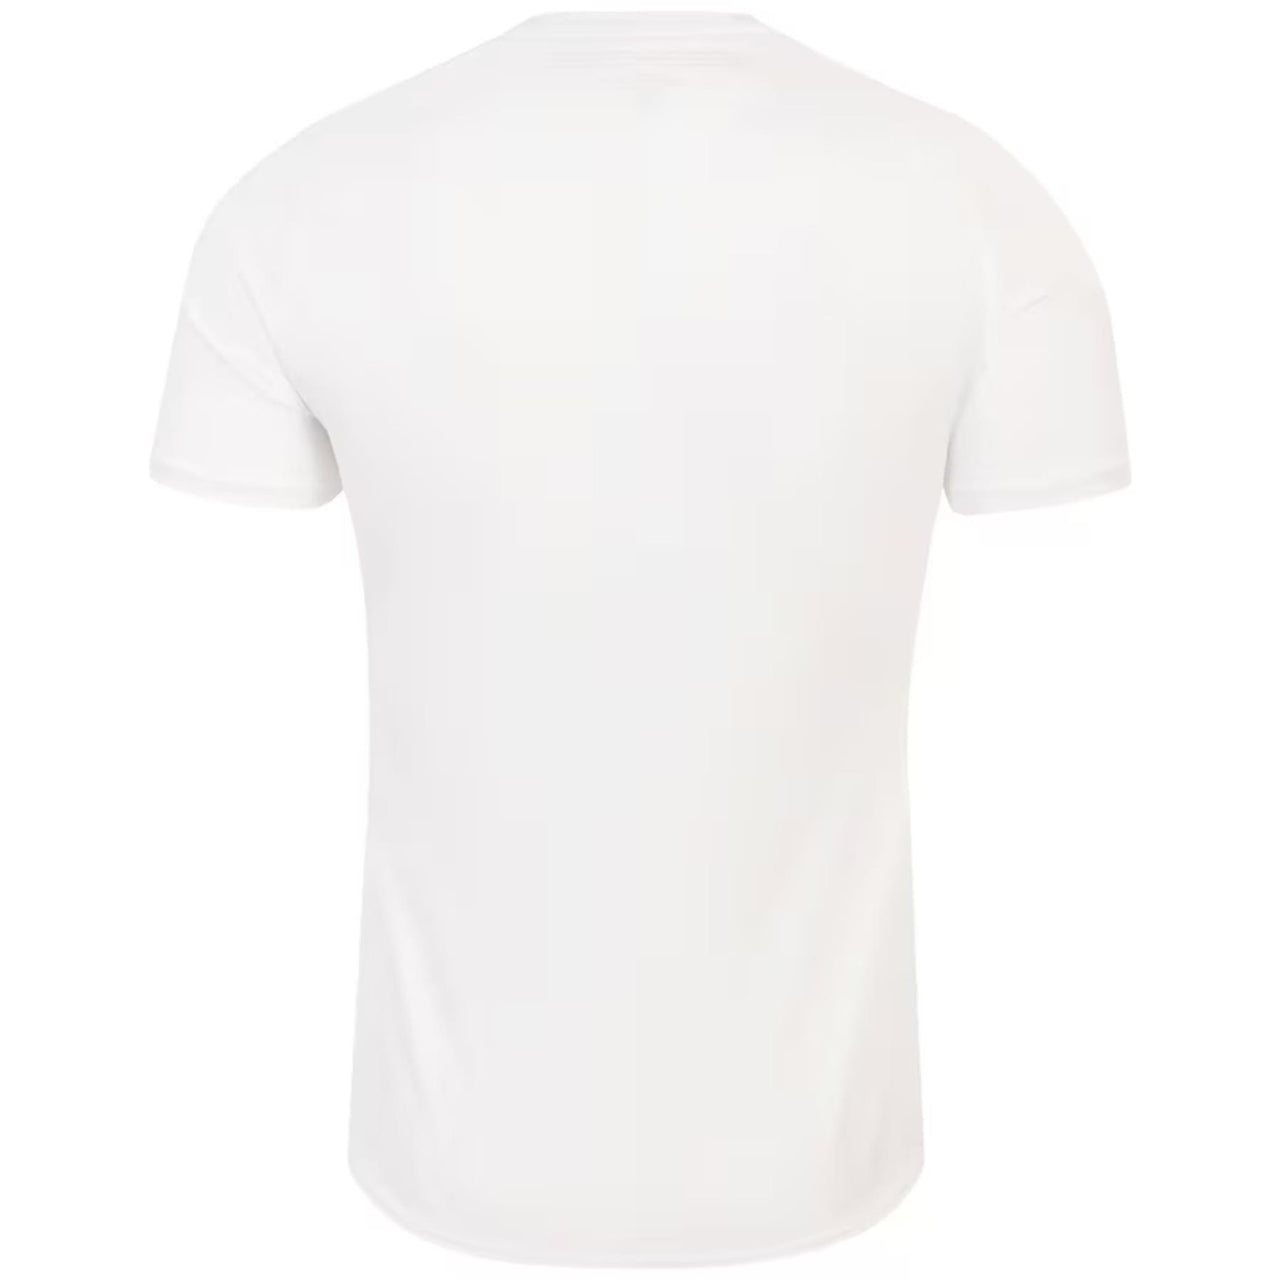 Umbro England Rugby World Cup 2023 Junior Replica Home Shirt | White